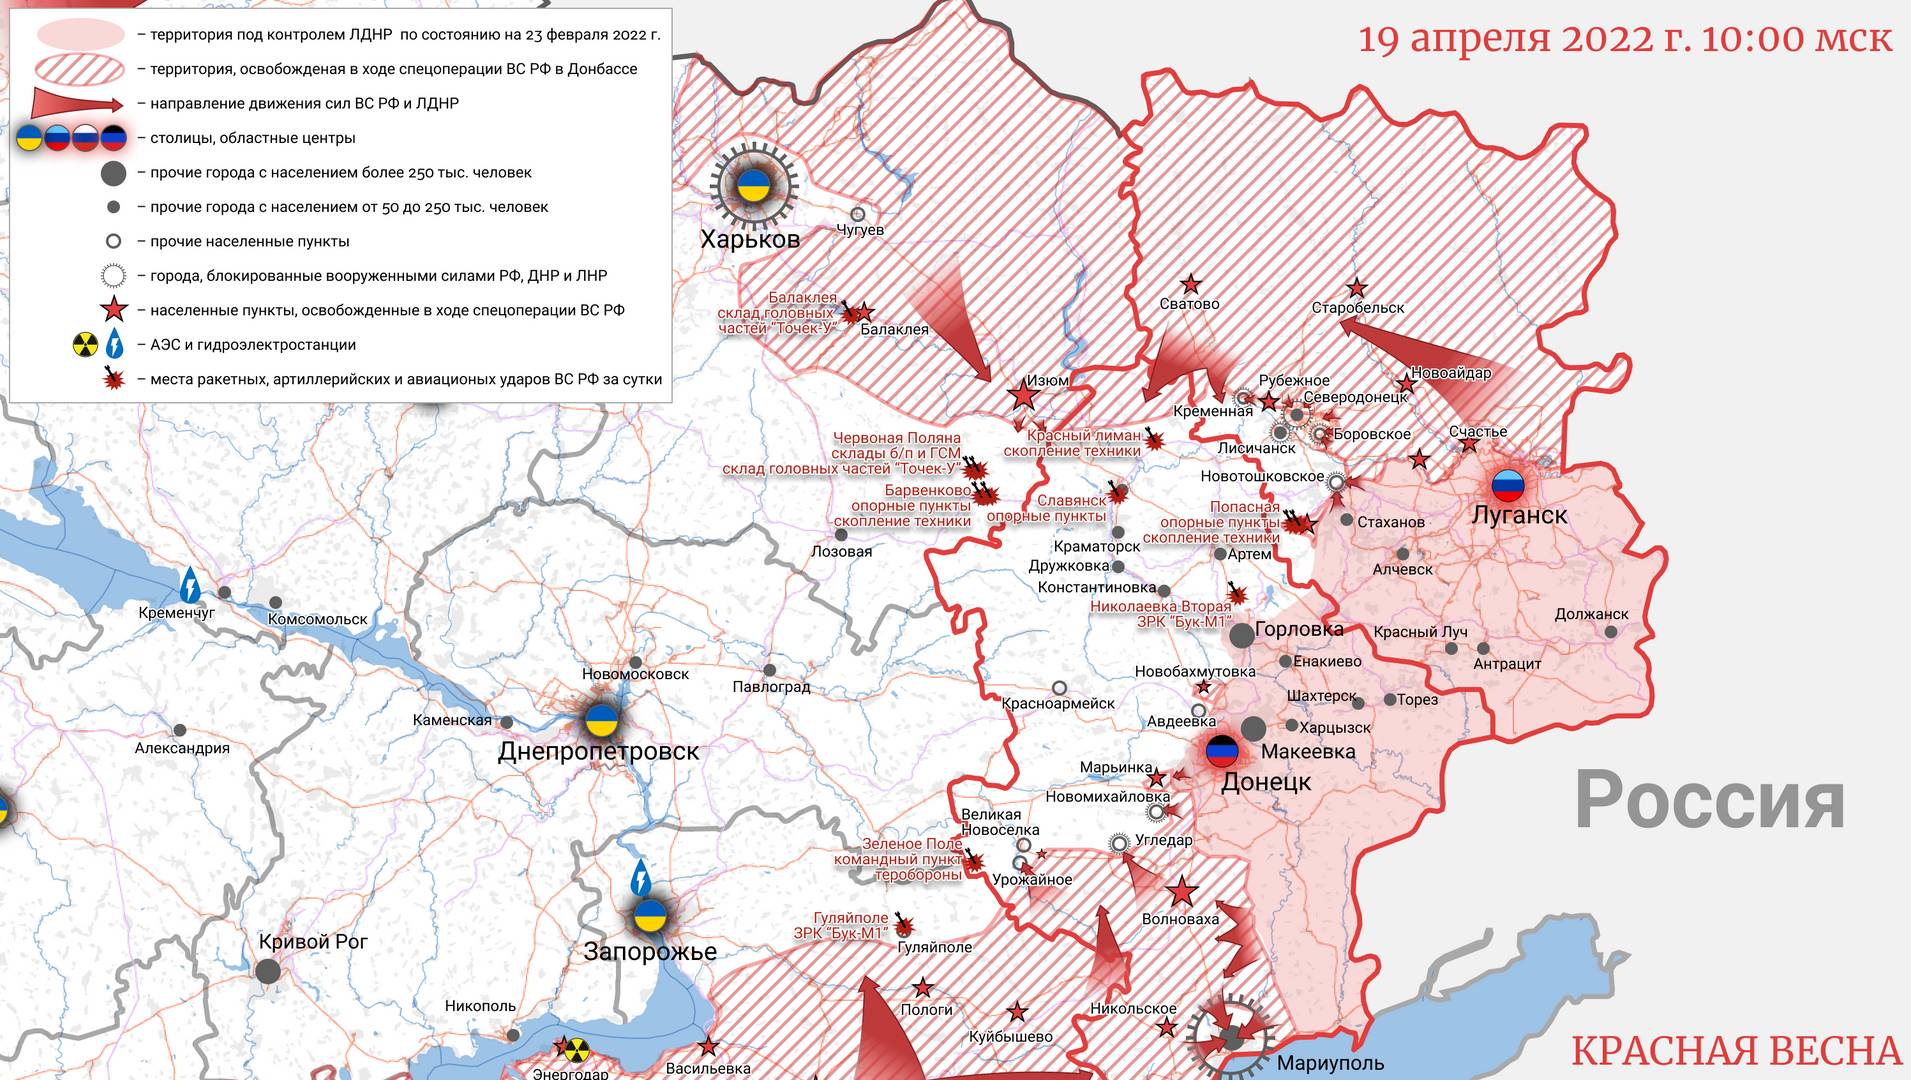 Карта Украины 19 апреля 2022 года 10:00 © ИА Красная Весна 